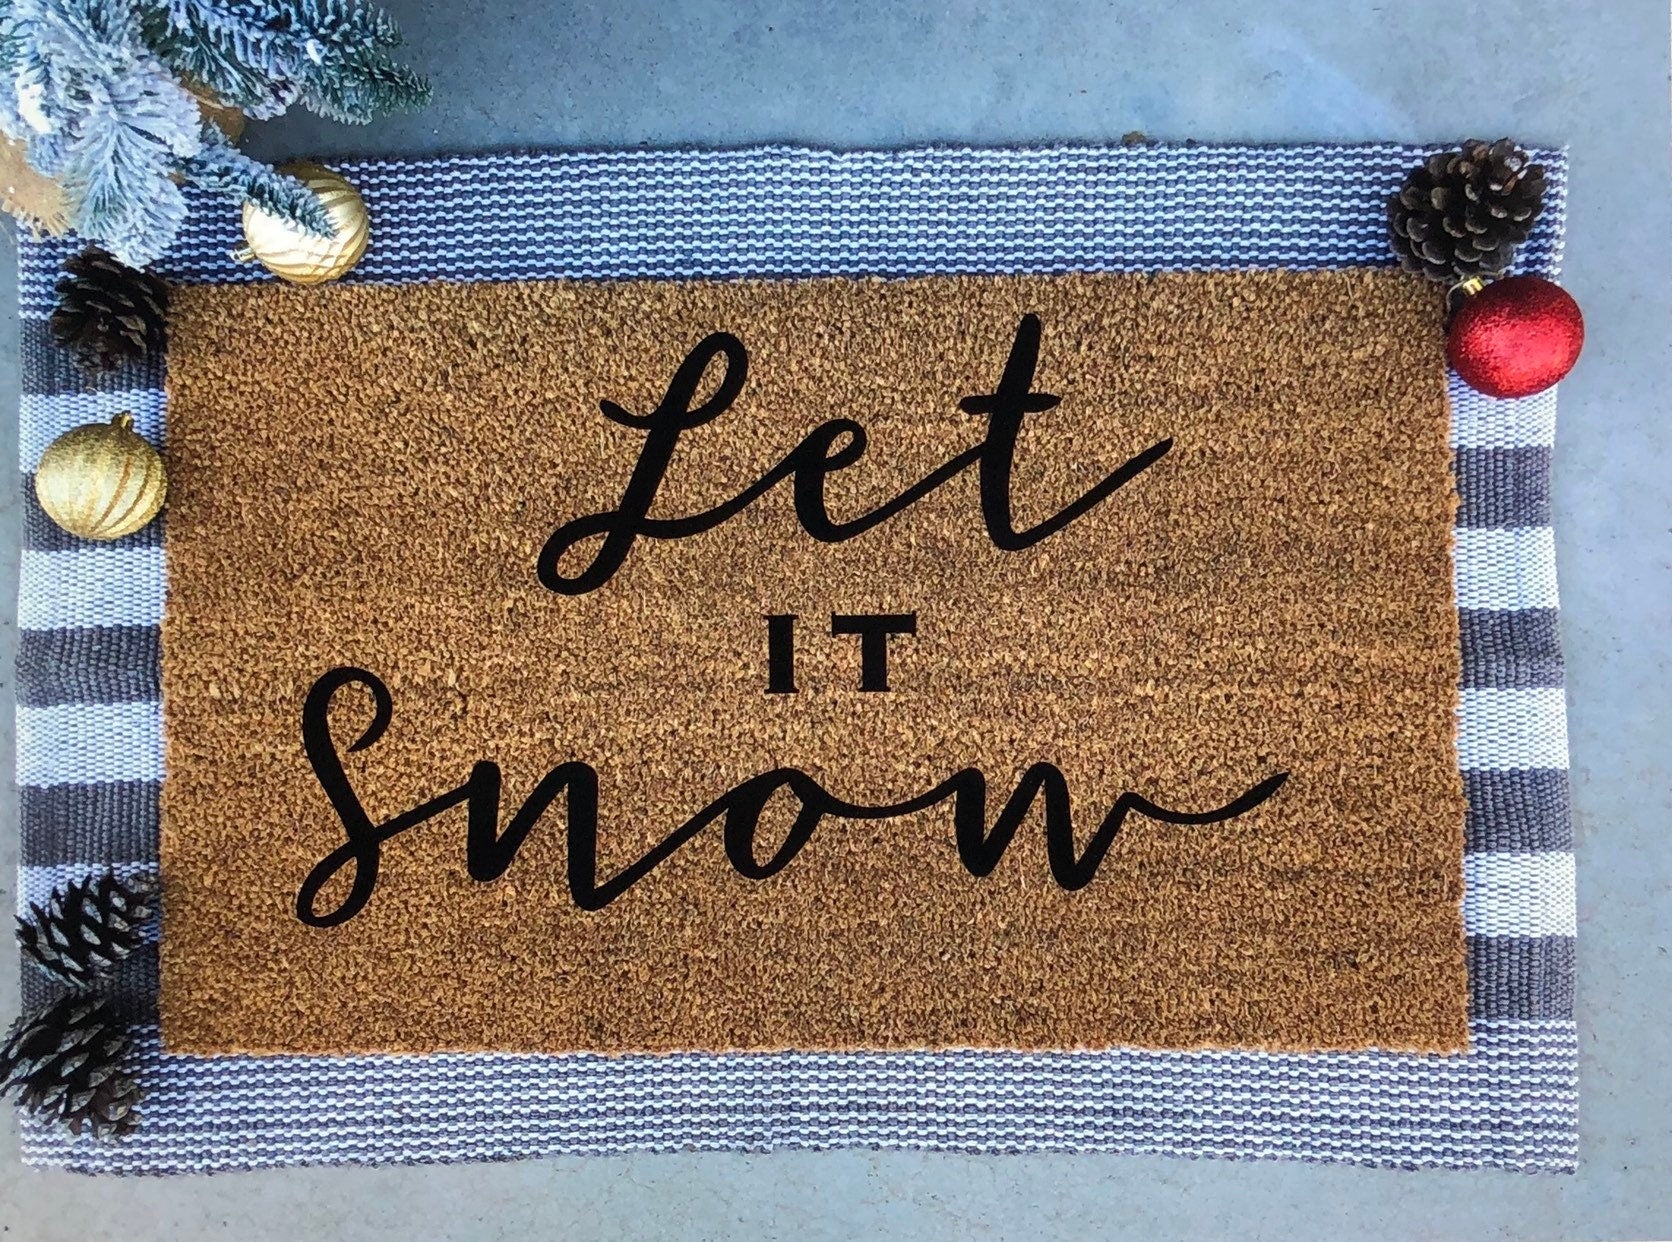 Snow Doormat